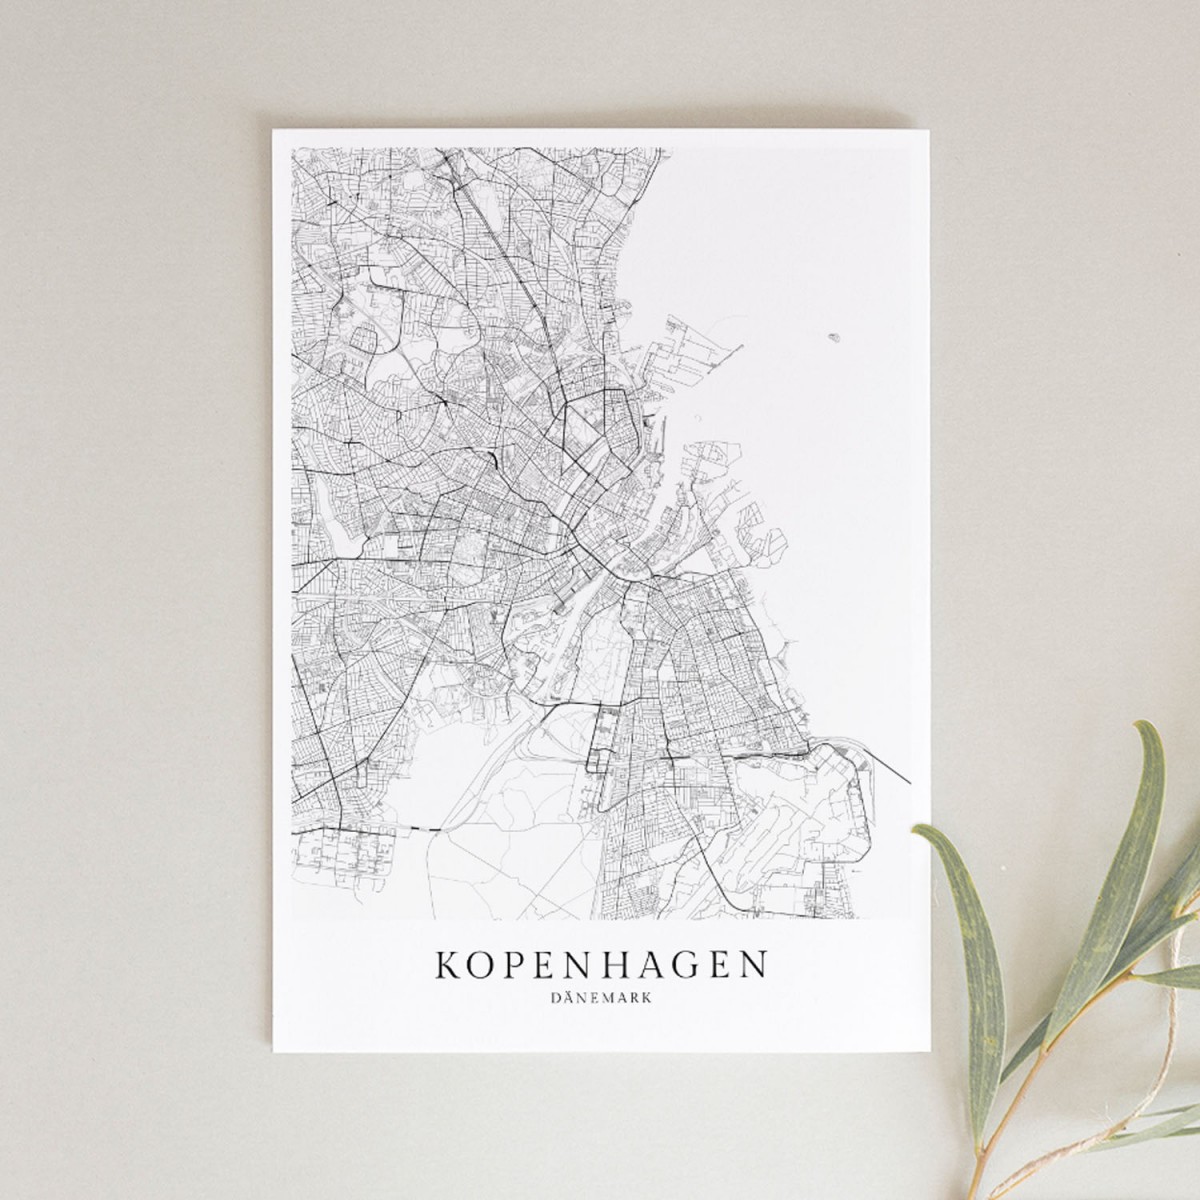 KOPENHAGEN als hochwertiges Poster im skandinavischen Stil von Skanemarie +++ Geschenkidee